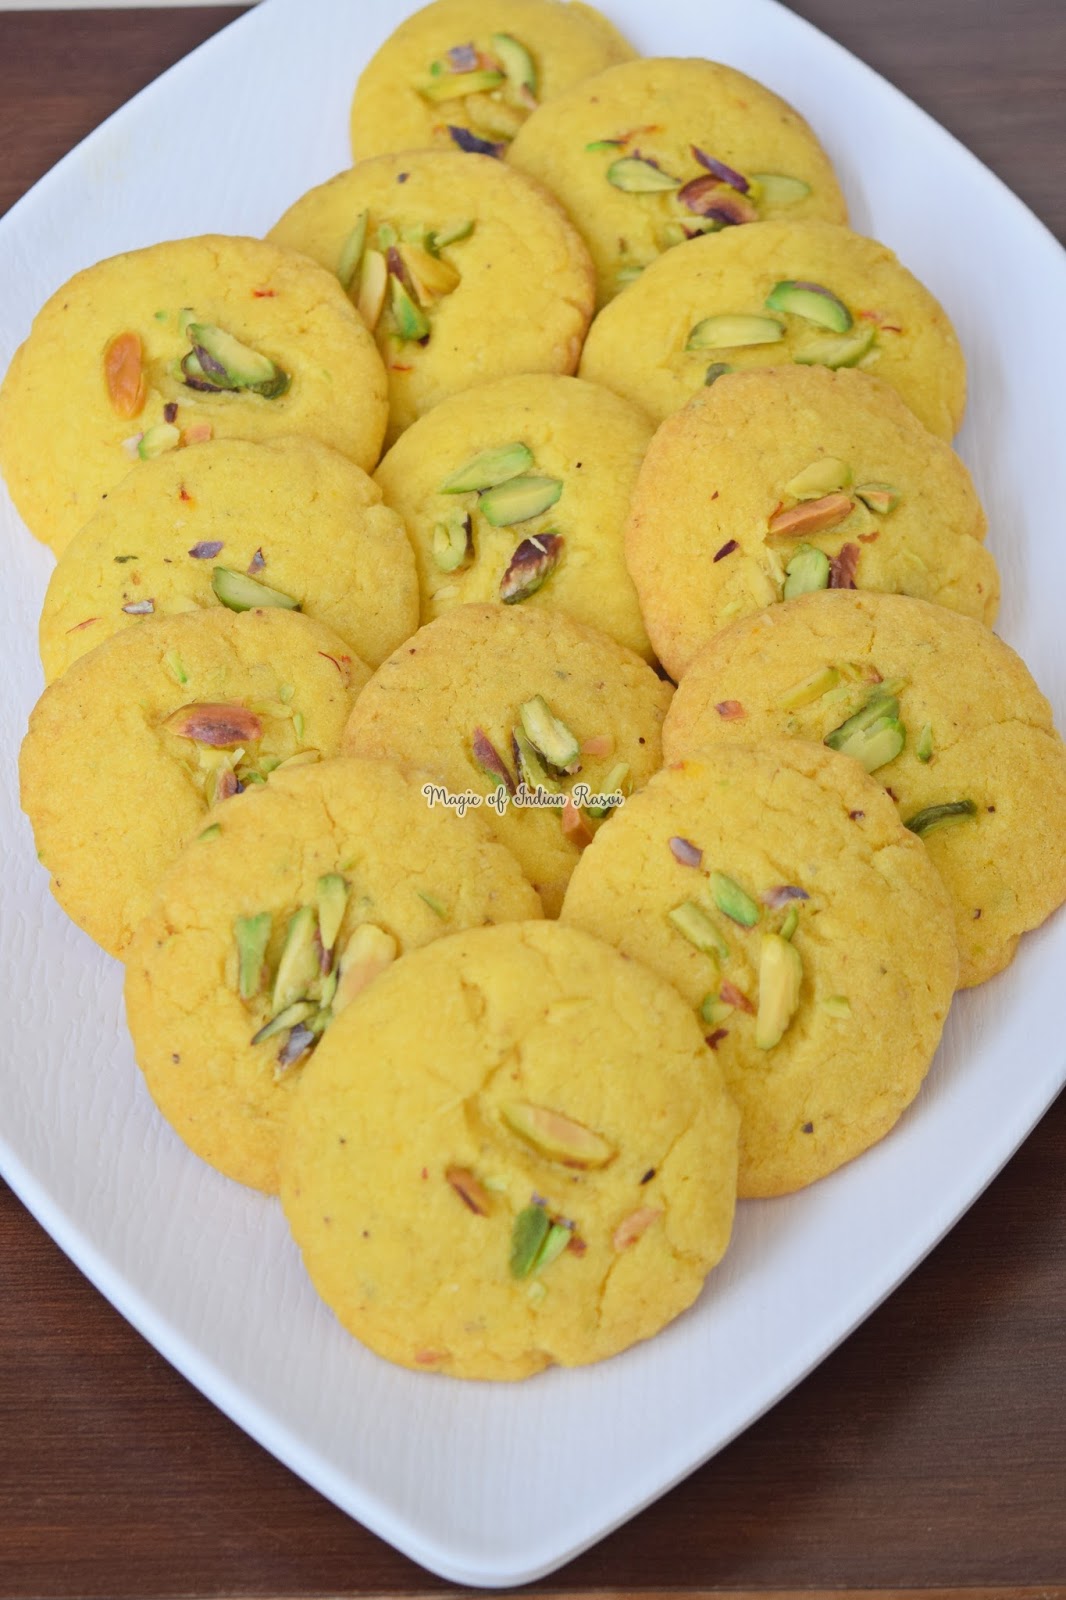 Kesar Pista Nankhatai in Kadai & in Oven Recipe - Bakery style Nan Khatai - Eggless Cookies -  केसर पिस्ता नानखटाई बिना ओवन - बेकरी स्टाइल नानकटाई - एगलेस कूकीज रेसिपी - Priya R - Magic of Indian Rasoi